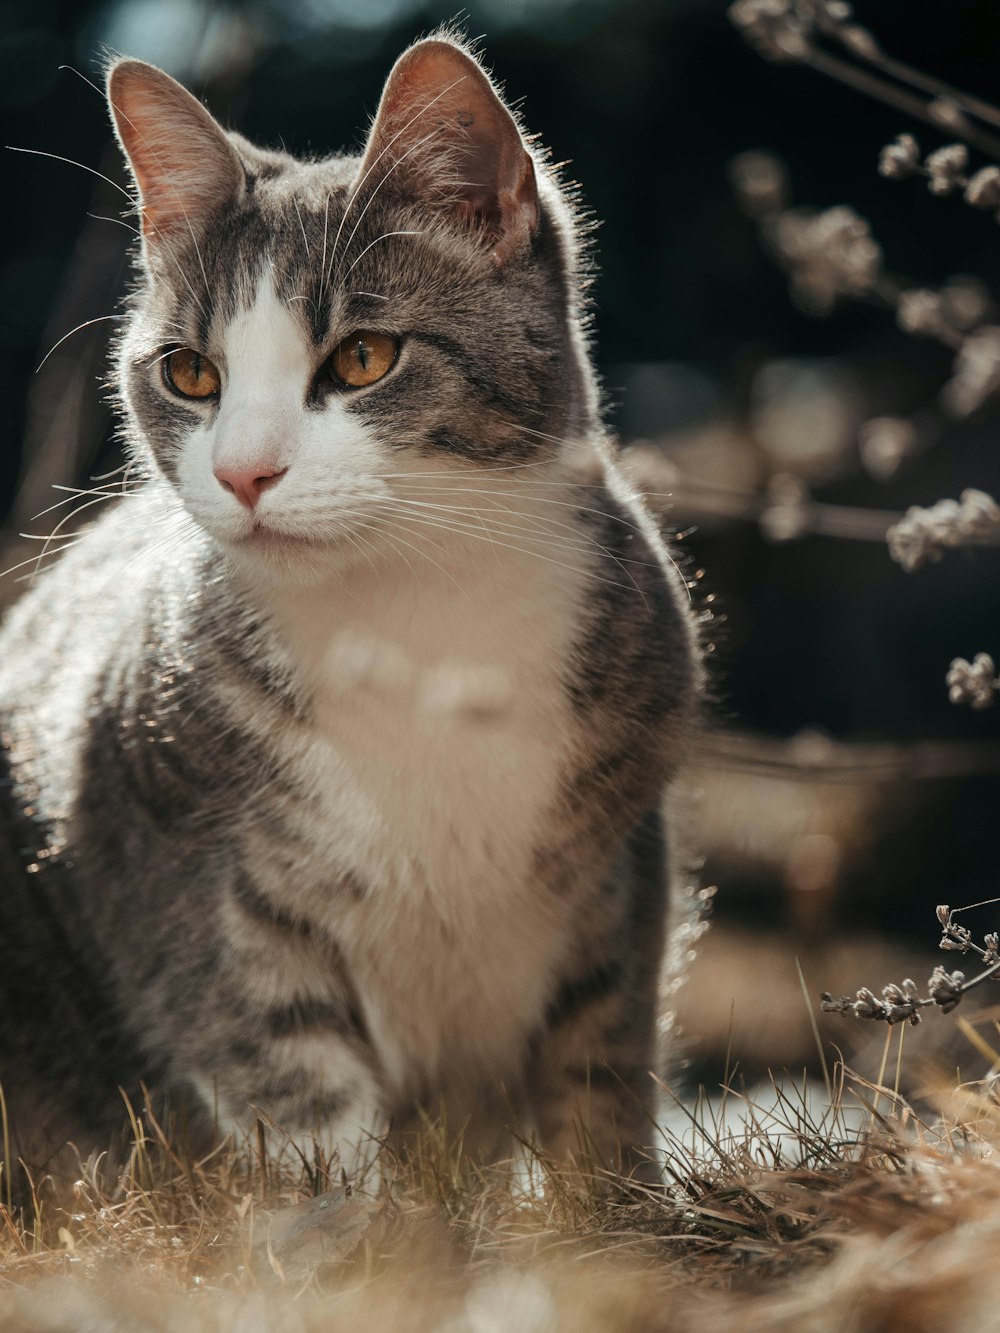 풀밭에 앉아있는 회색 고양이의 근접 촬영 사진